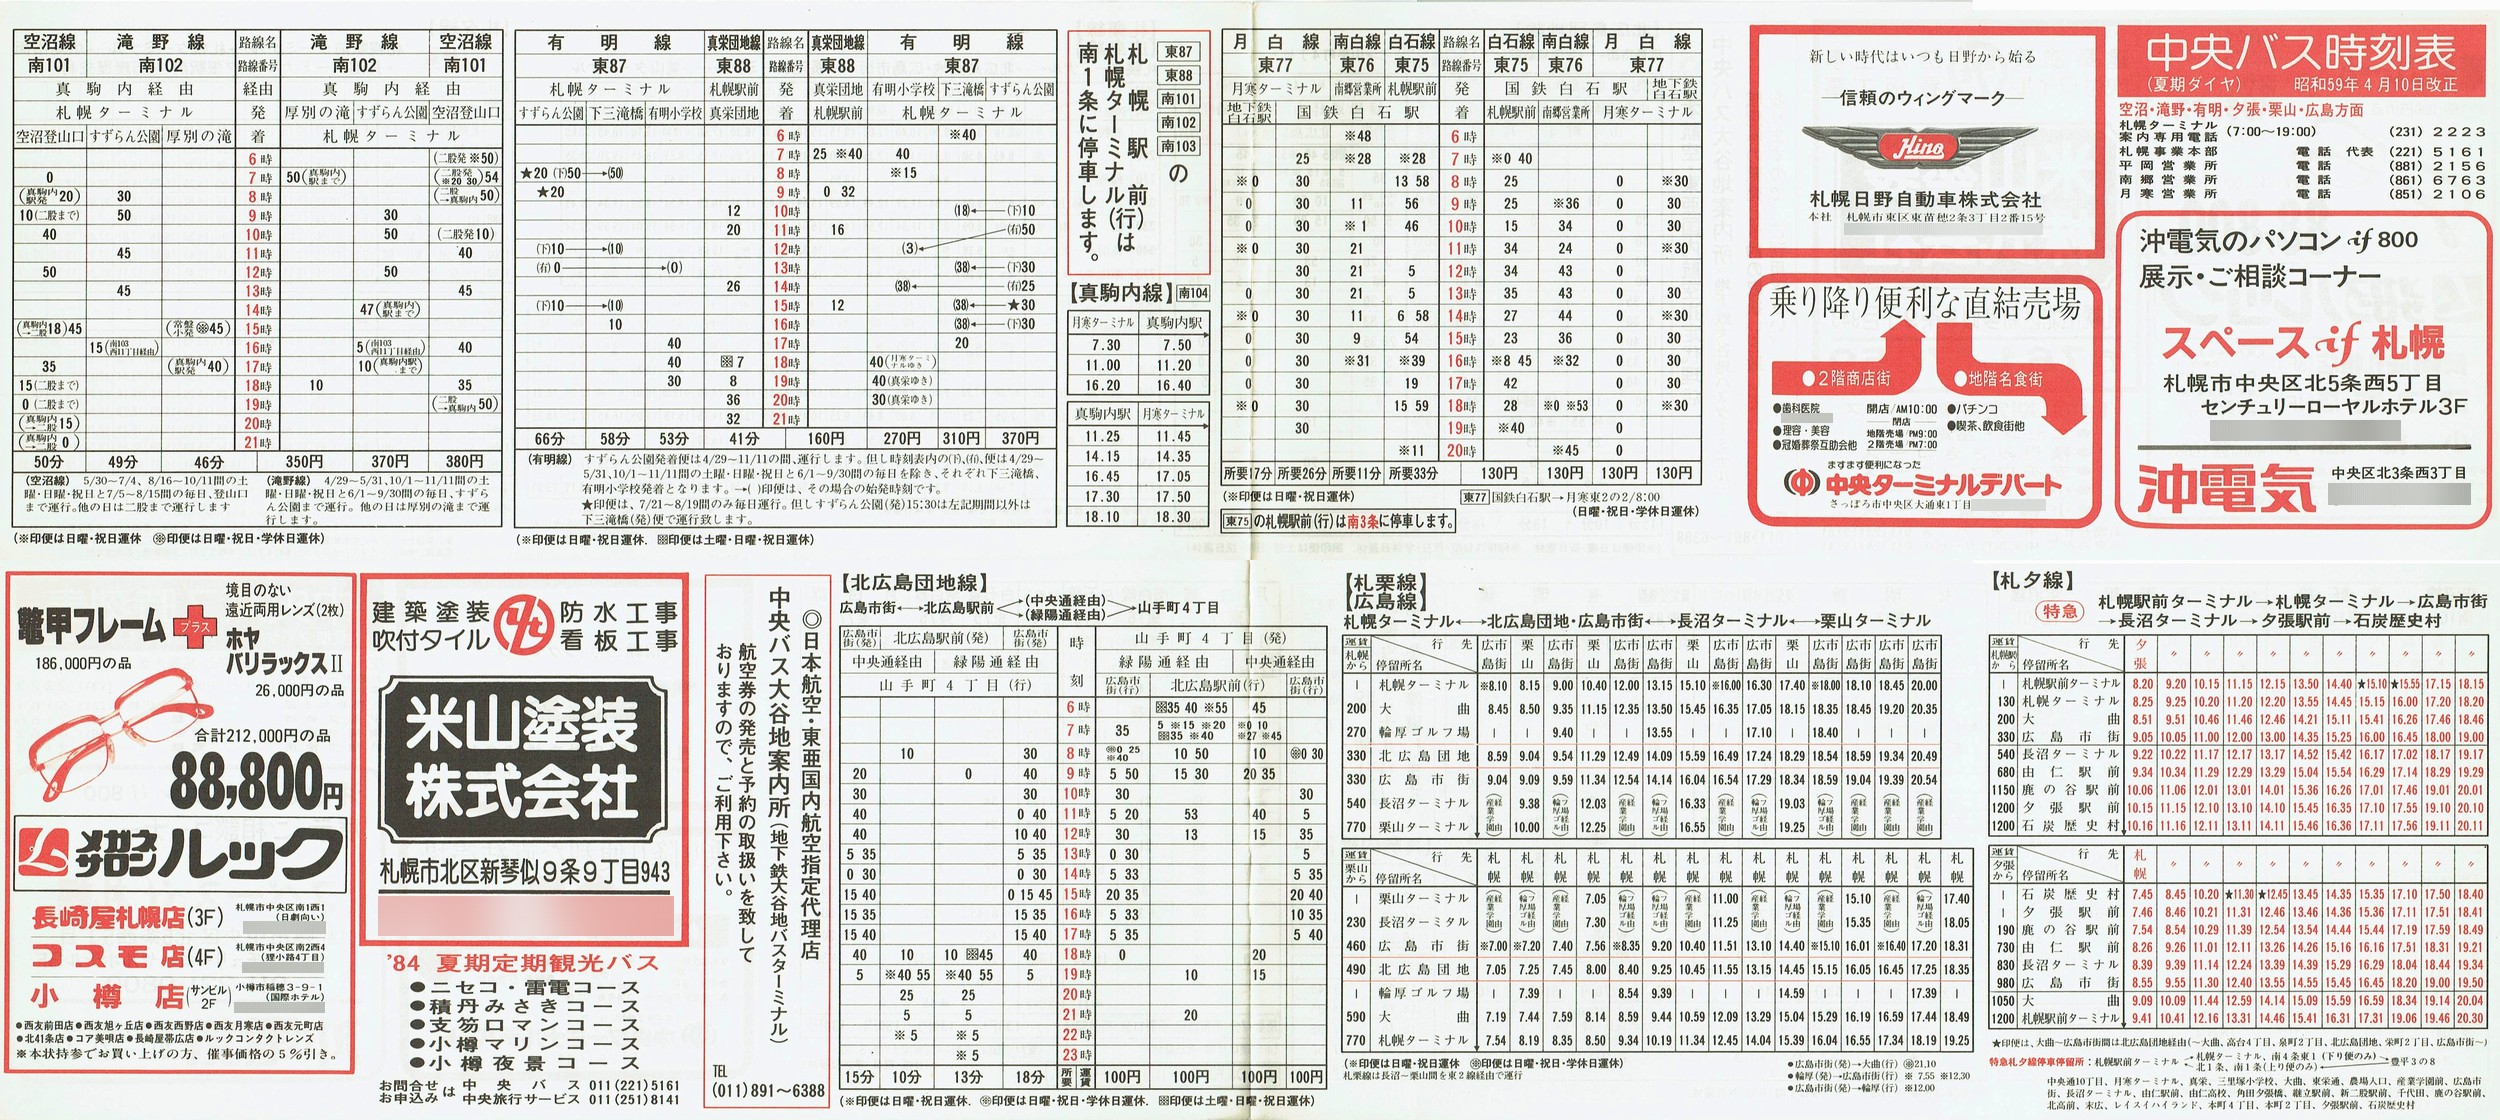 1984-04-10改正_北海道中央バス(札幌)_空沼・滝野・有明・夕張・栗山・広島方面時刻表